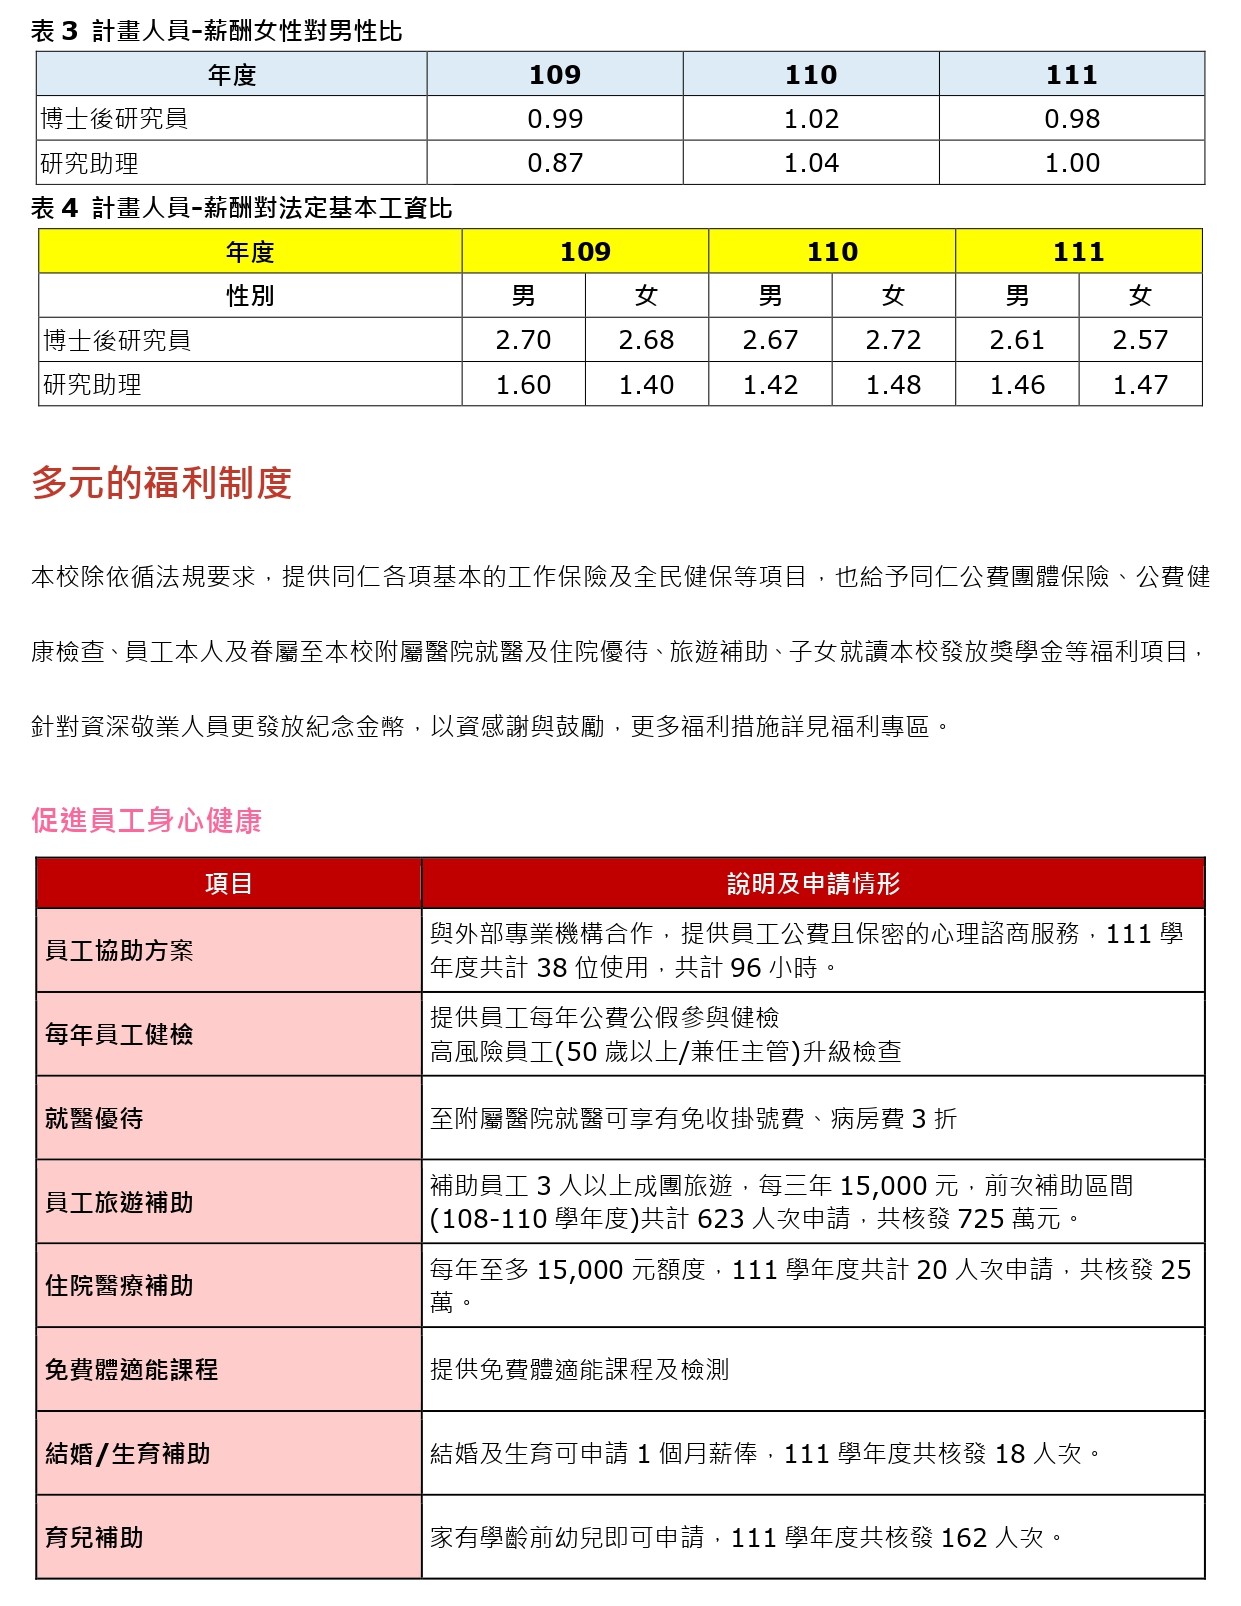 薪资及多元福利制度-for 网页- (中文) New_page-0002